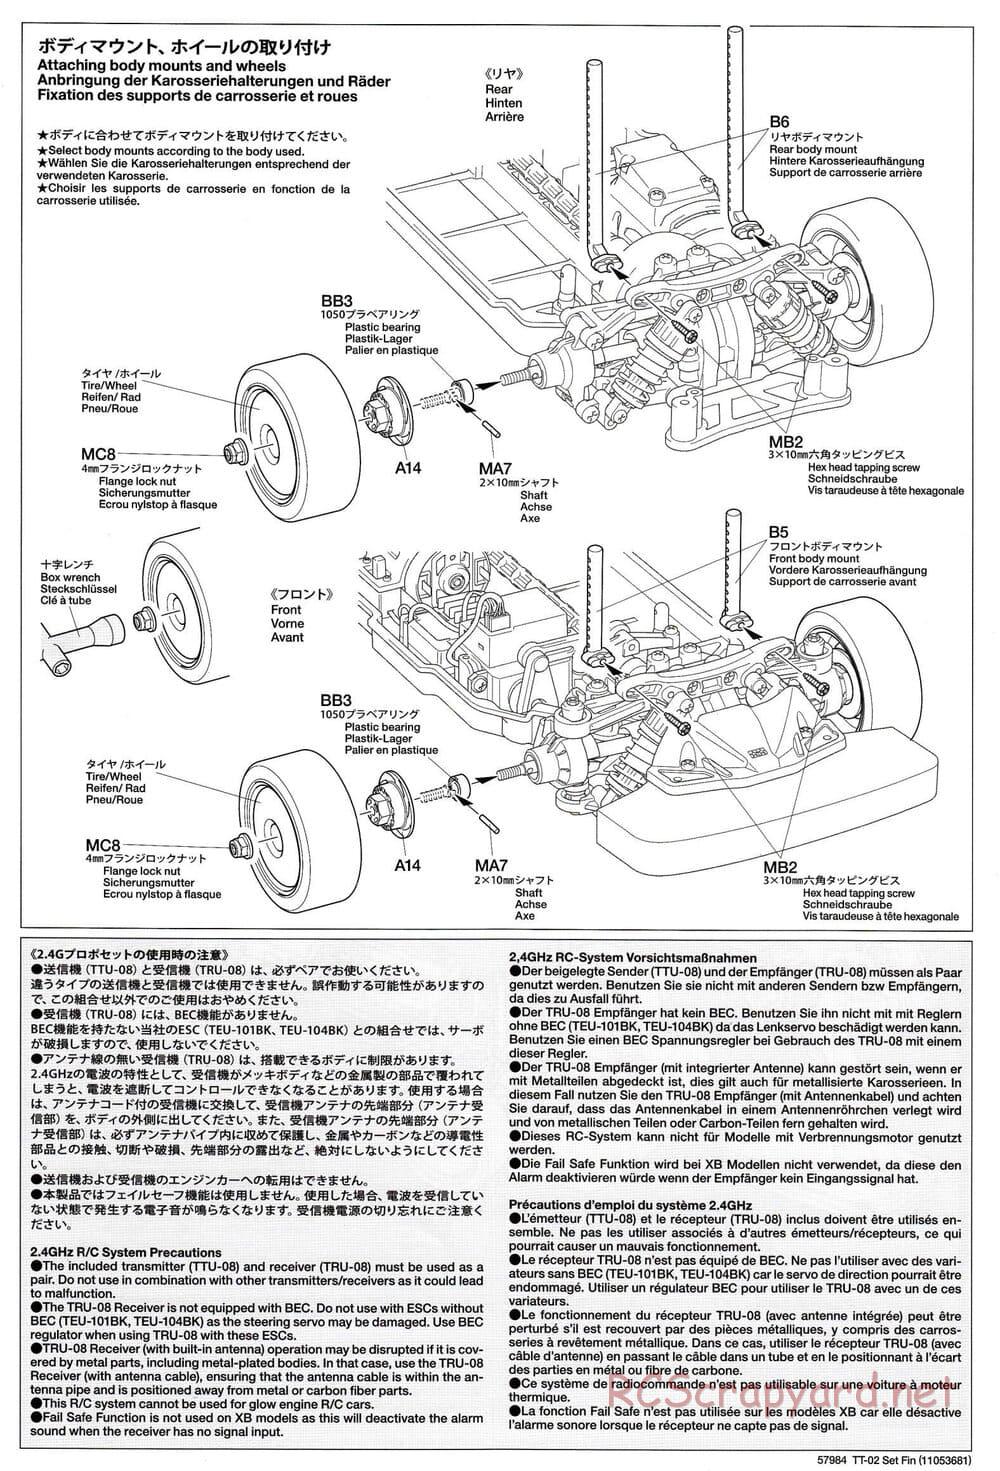 Tamiya - SA TT-02 Semi-Assembled Chassis - Manual - Page 2